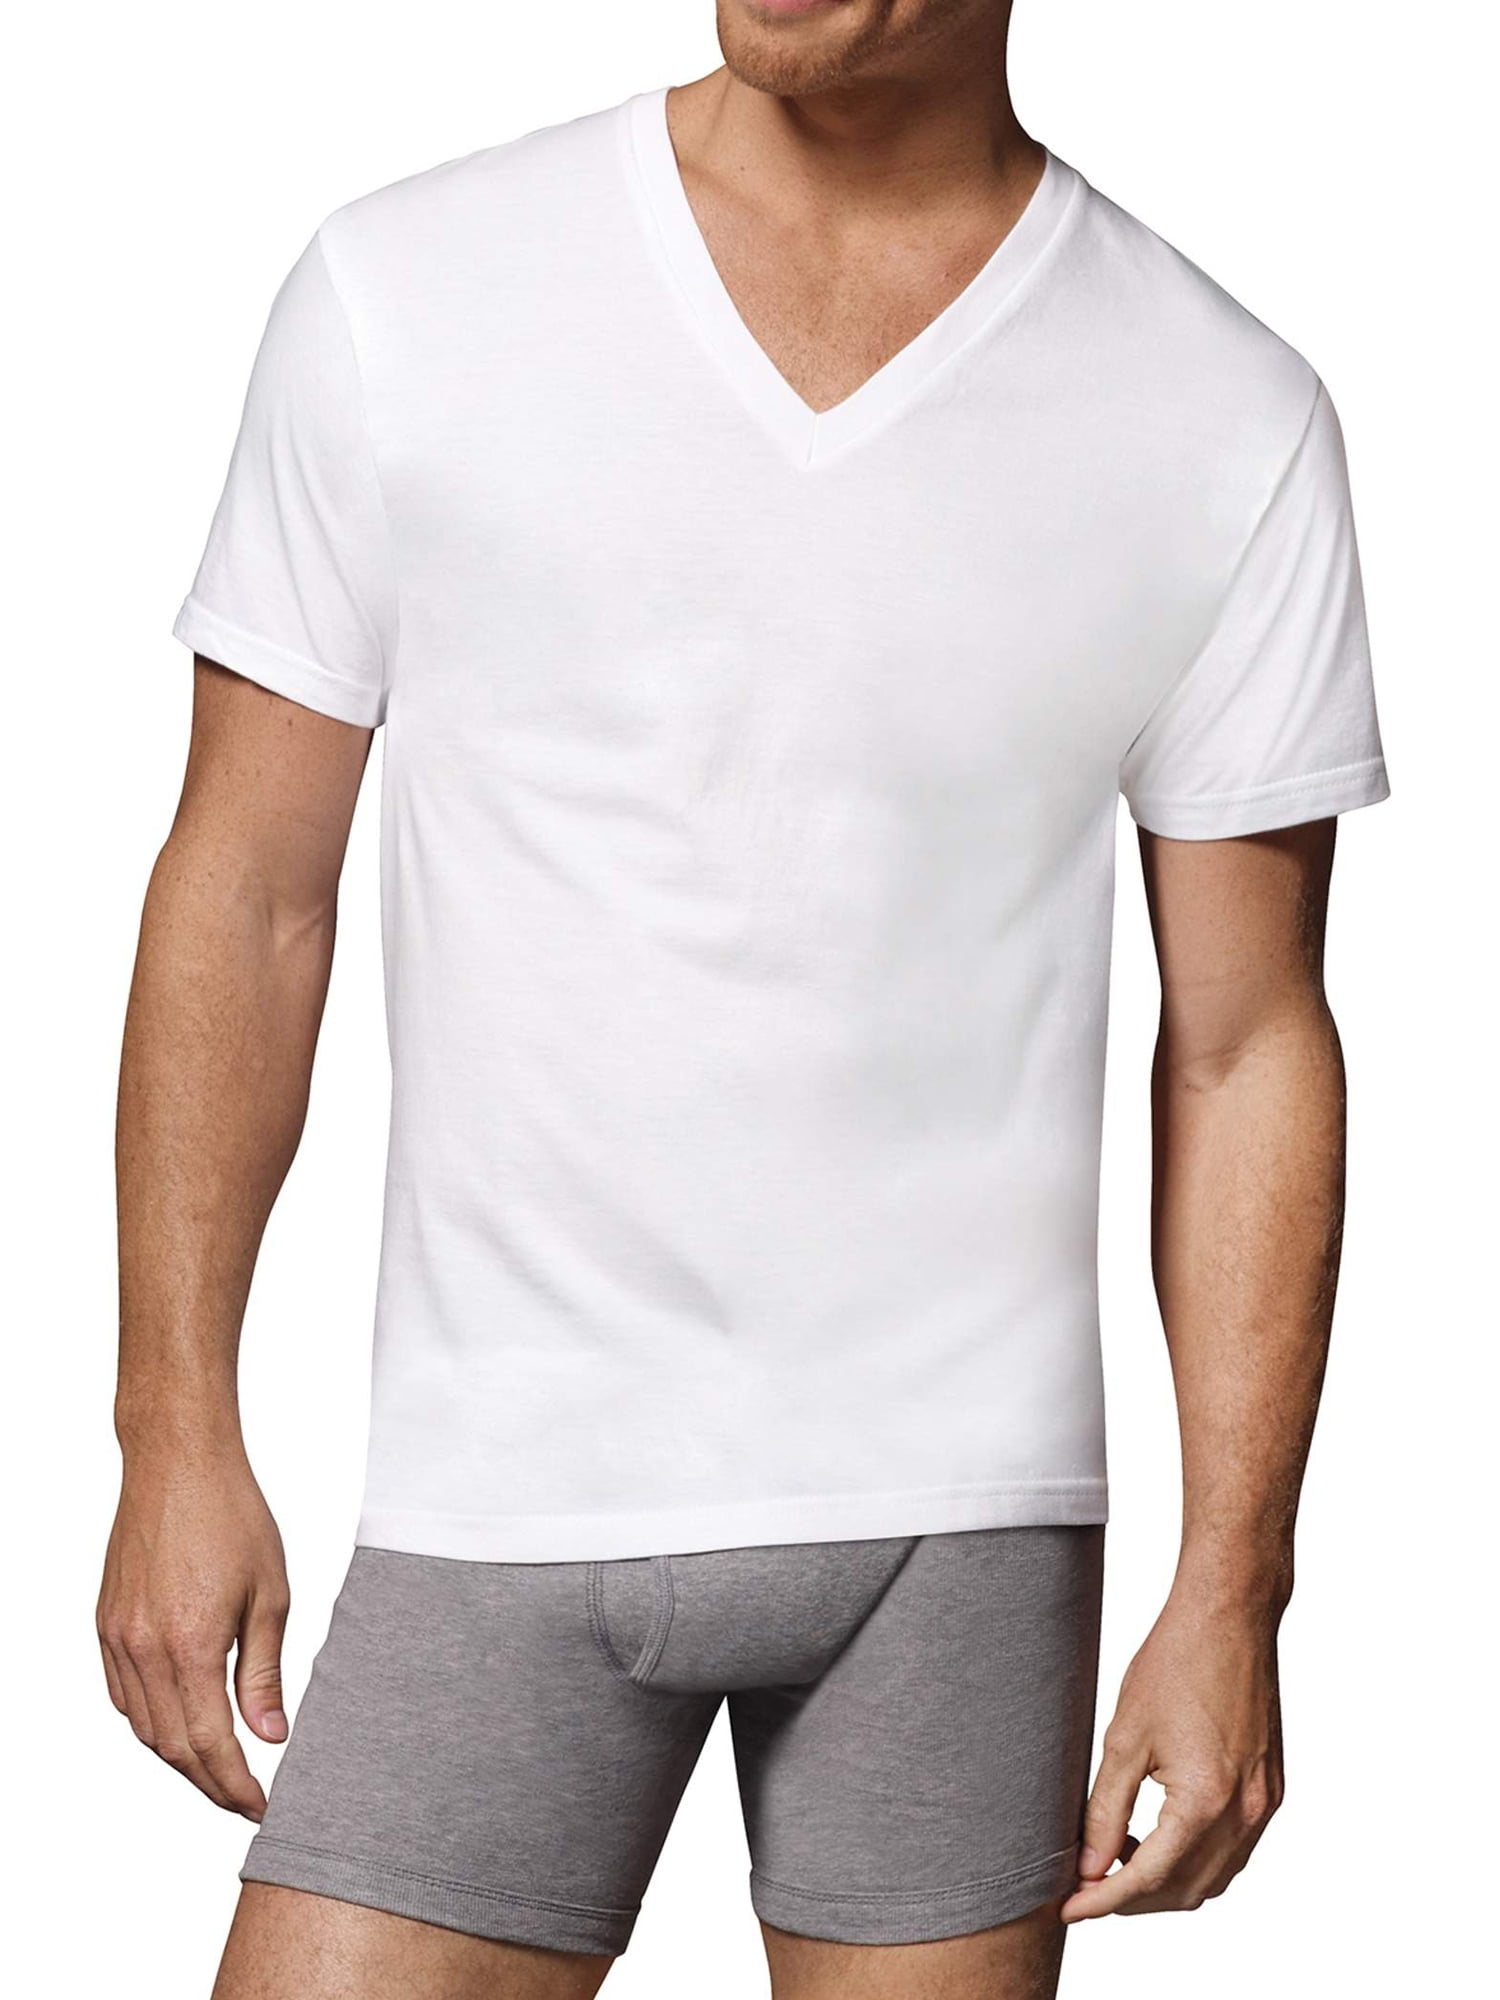 Hanes - Hanes Men's FreshIQ Comfortsoft White V-Neck T-Shirts, 6 Pack ...